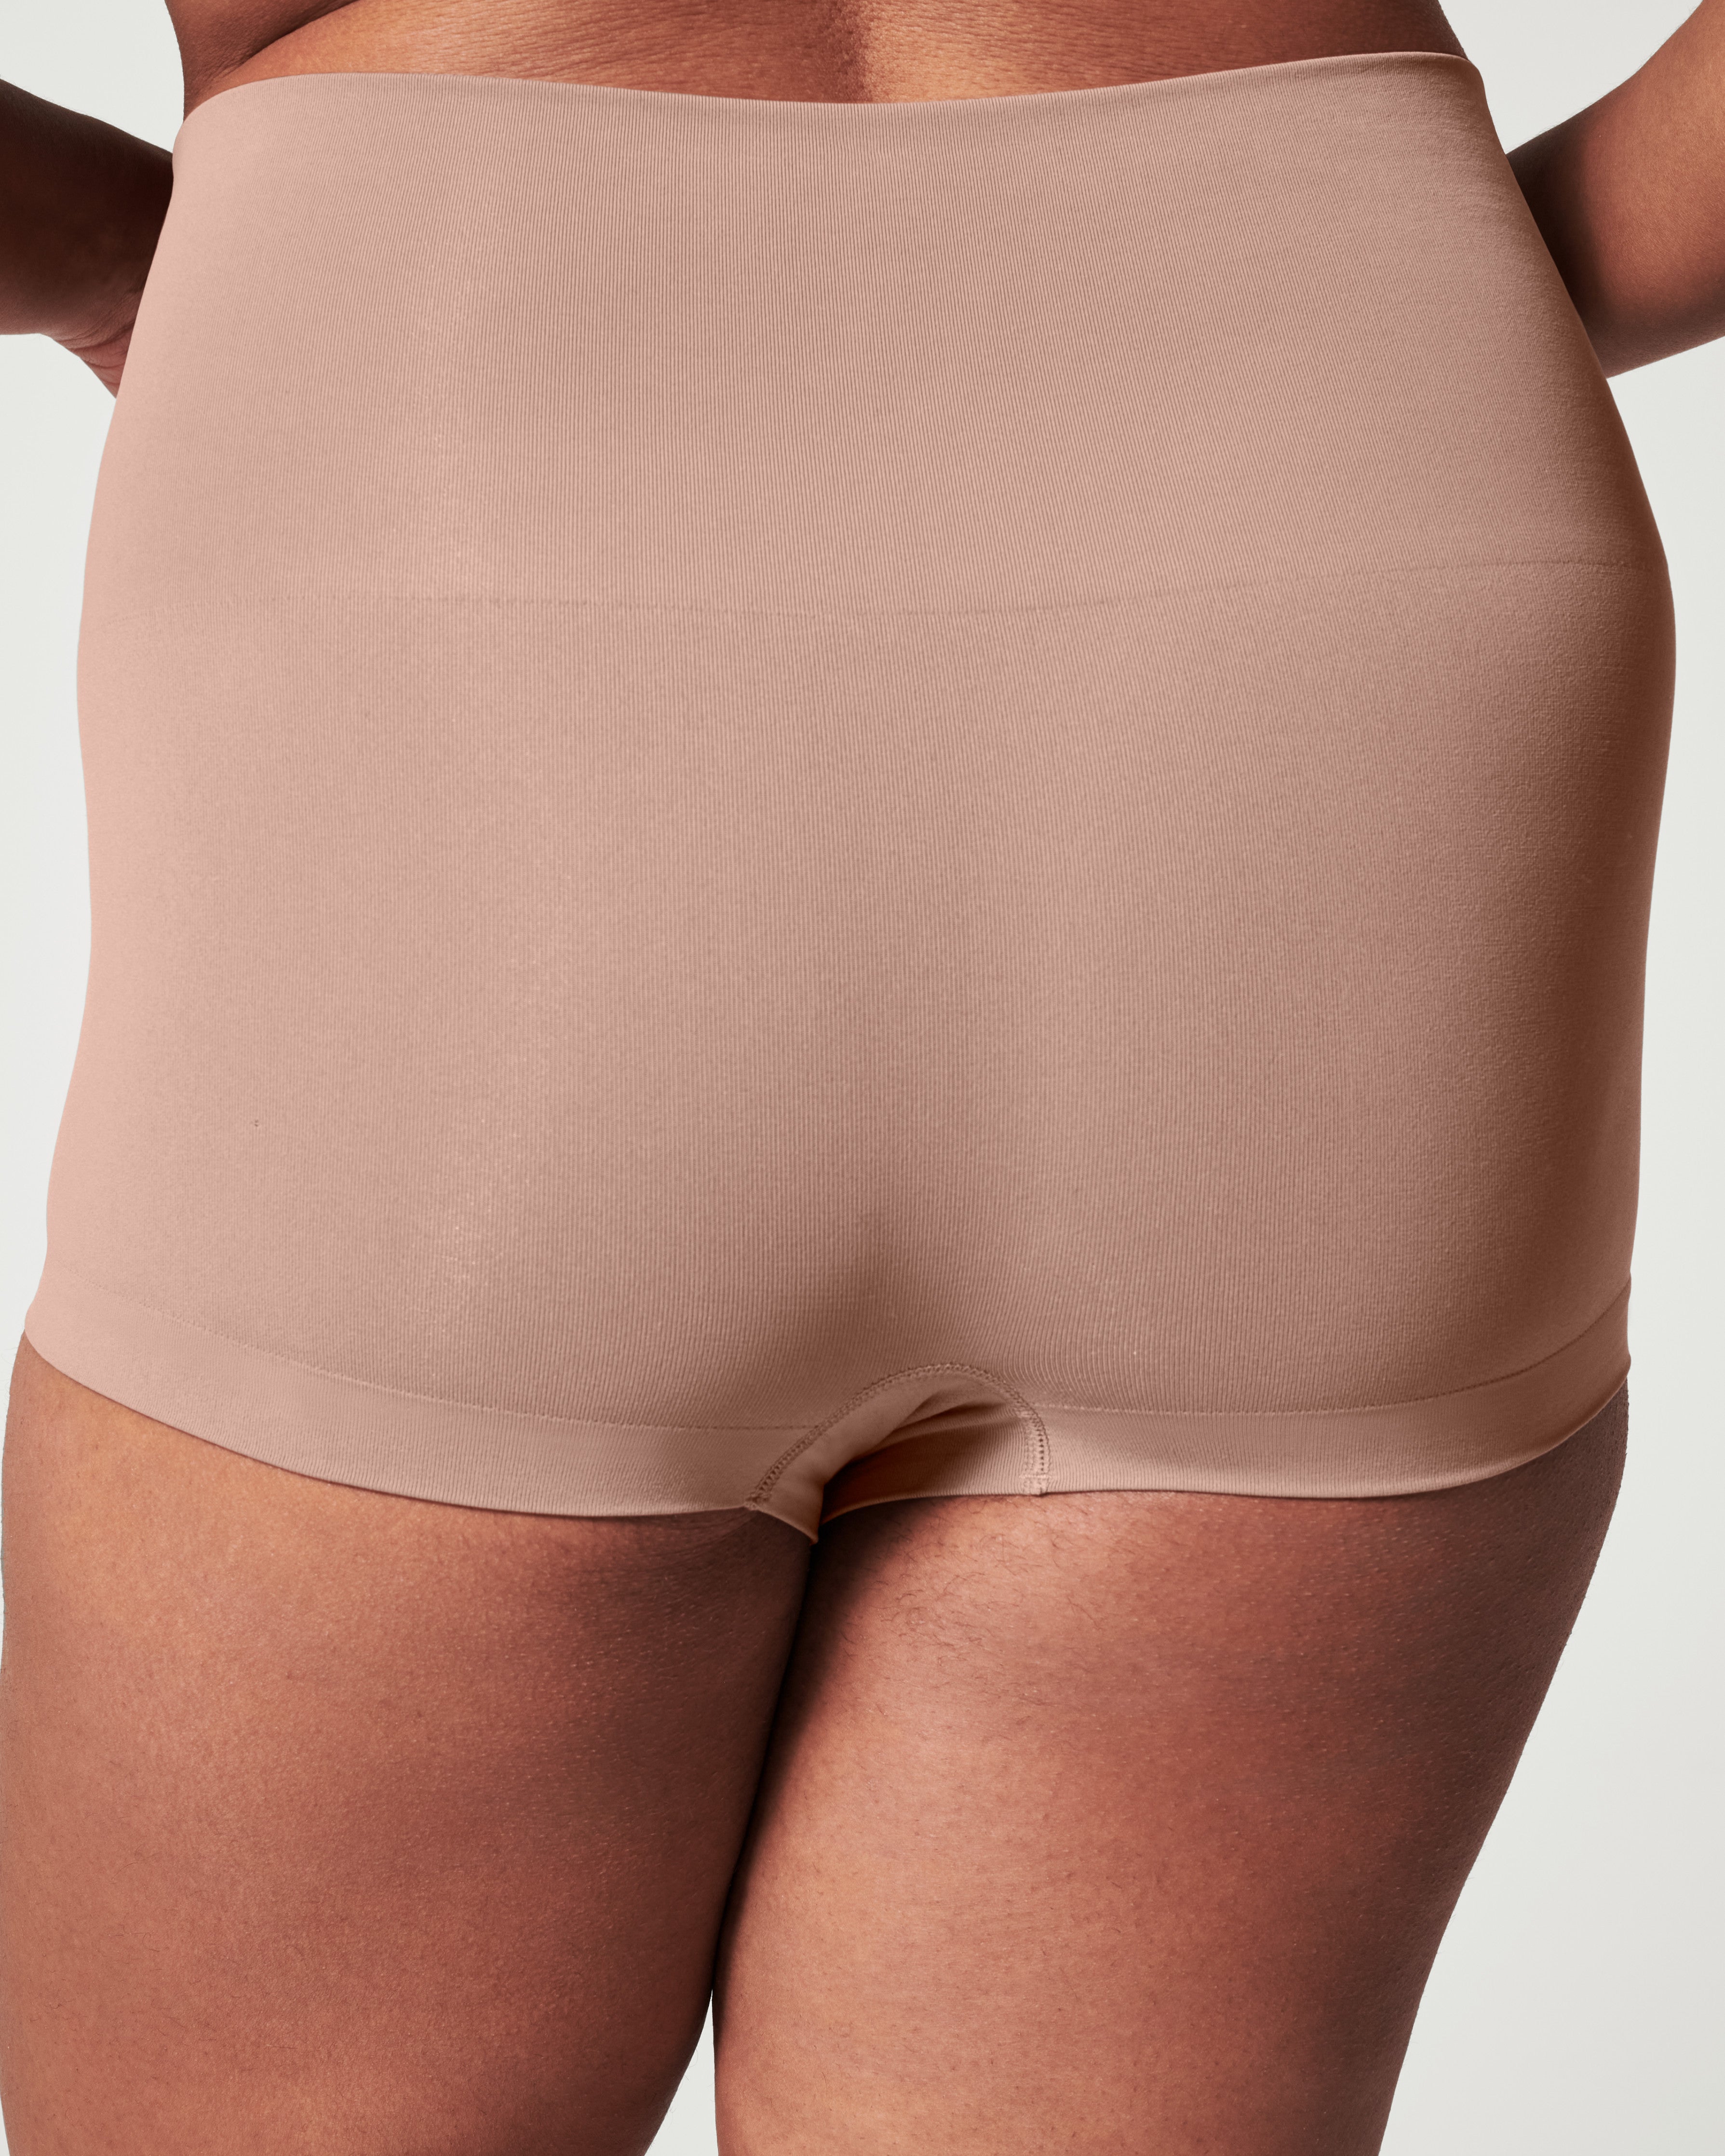 Amaping Shapewear Shorts for Women Tummy Control Boyshorts High